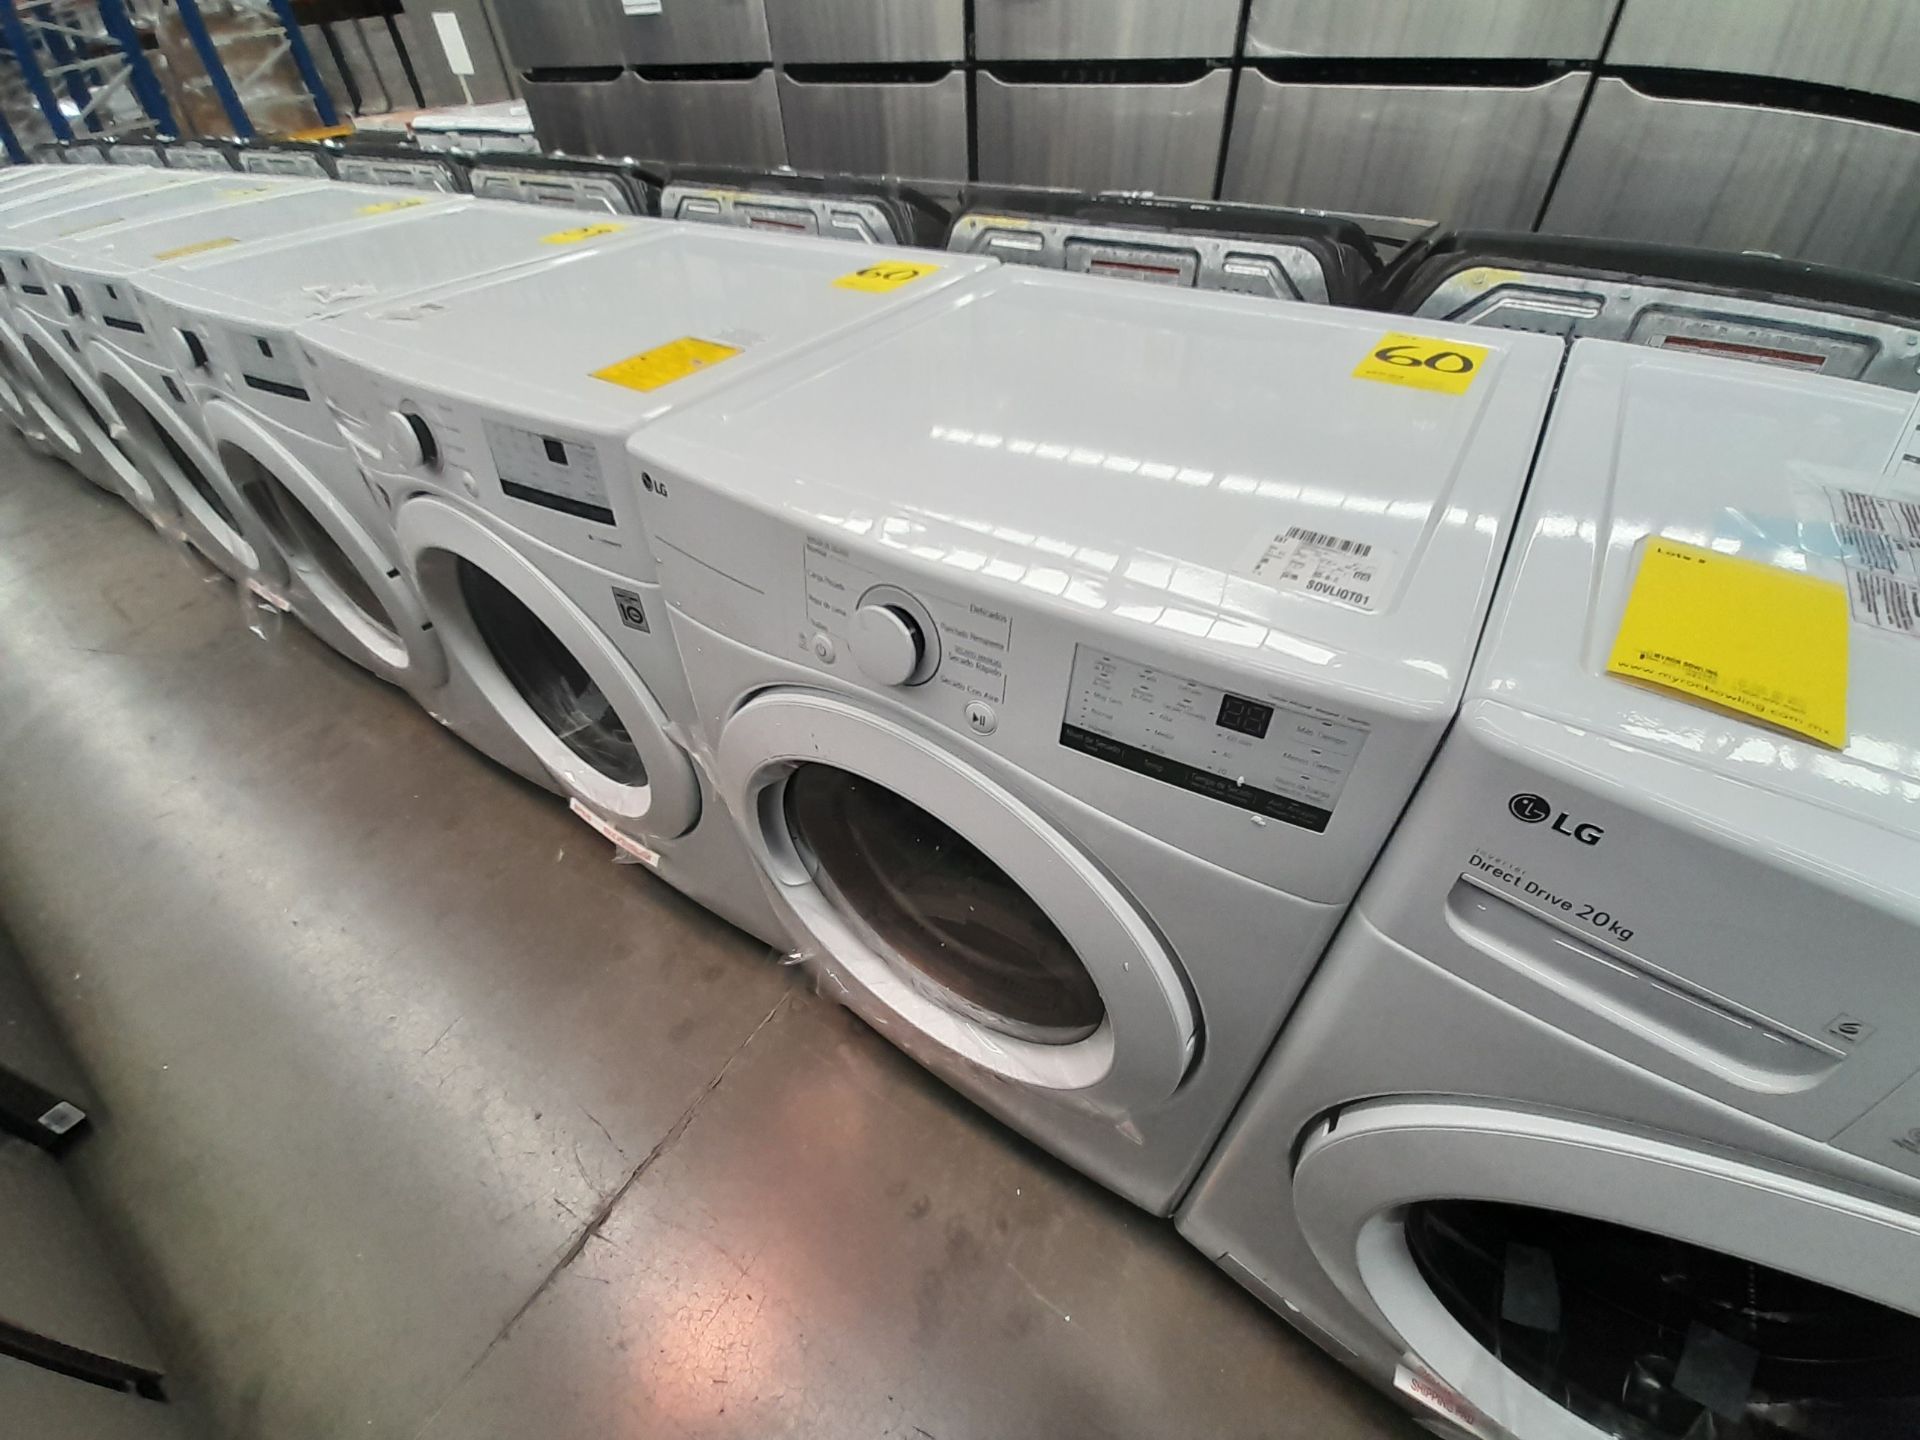 (Nuevo) Lote de 1 lavadora y 1 secadora contiene: 1 lavadora de 20 K, Marca LG, Modelo WN20WV26W, S - Image 2 of 6